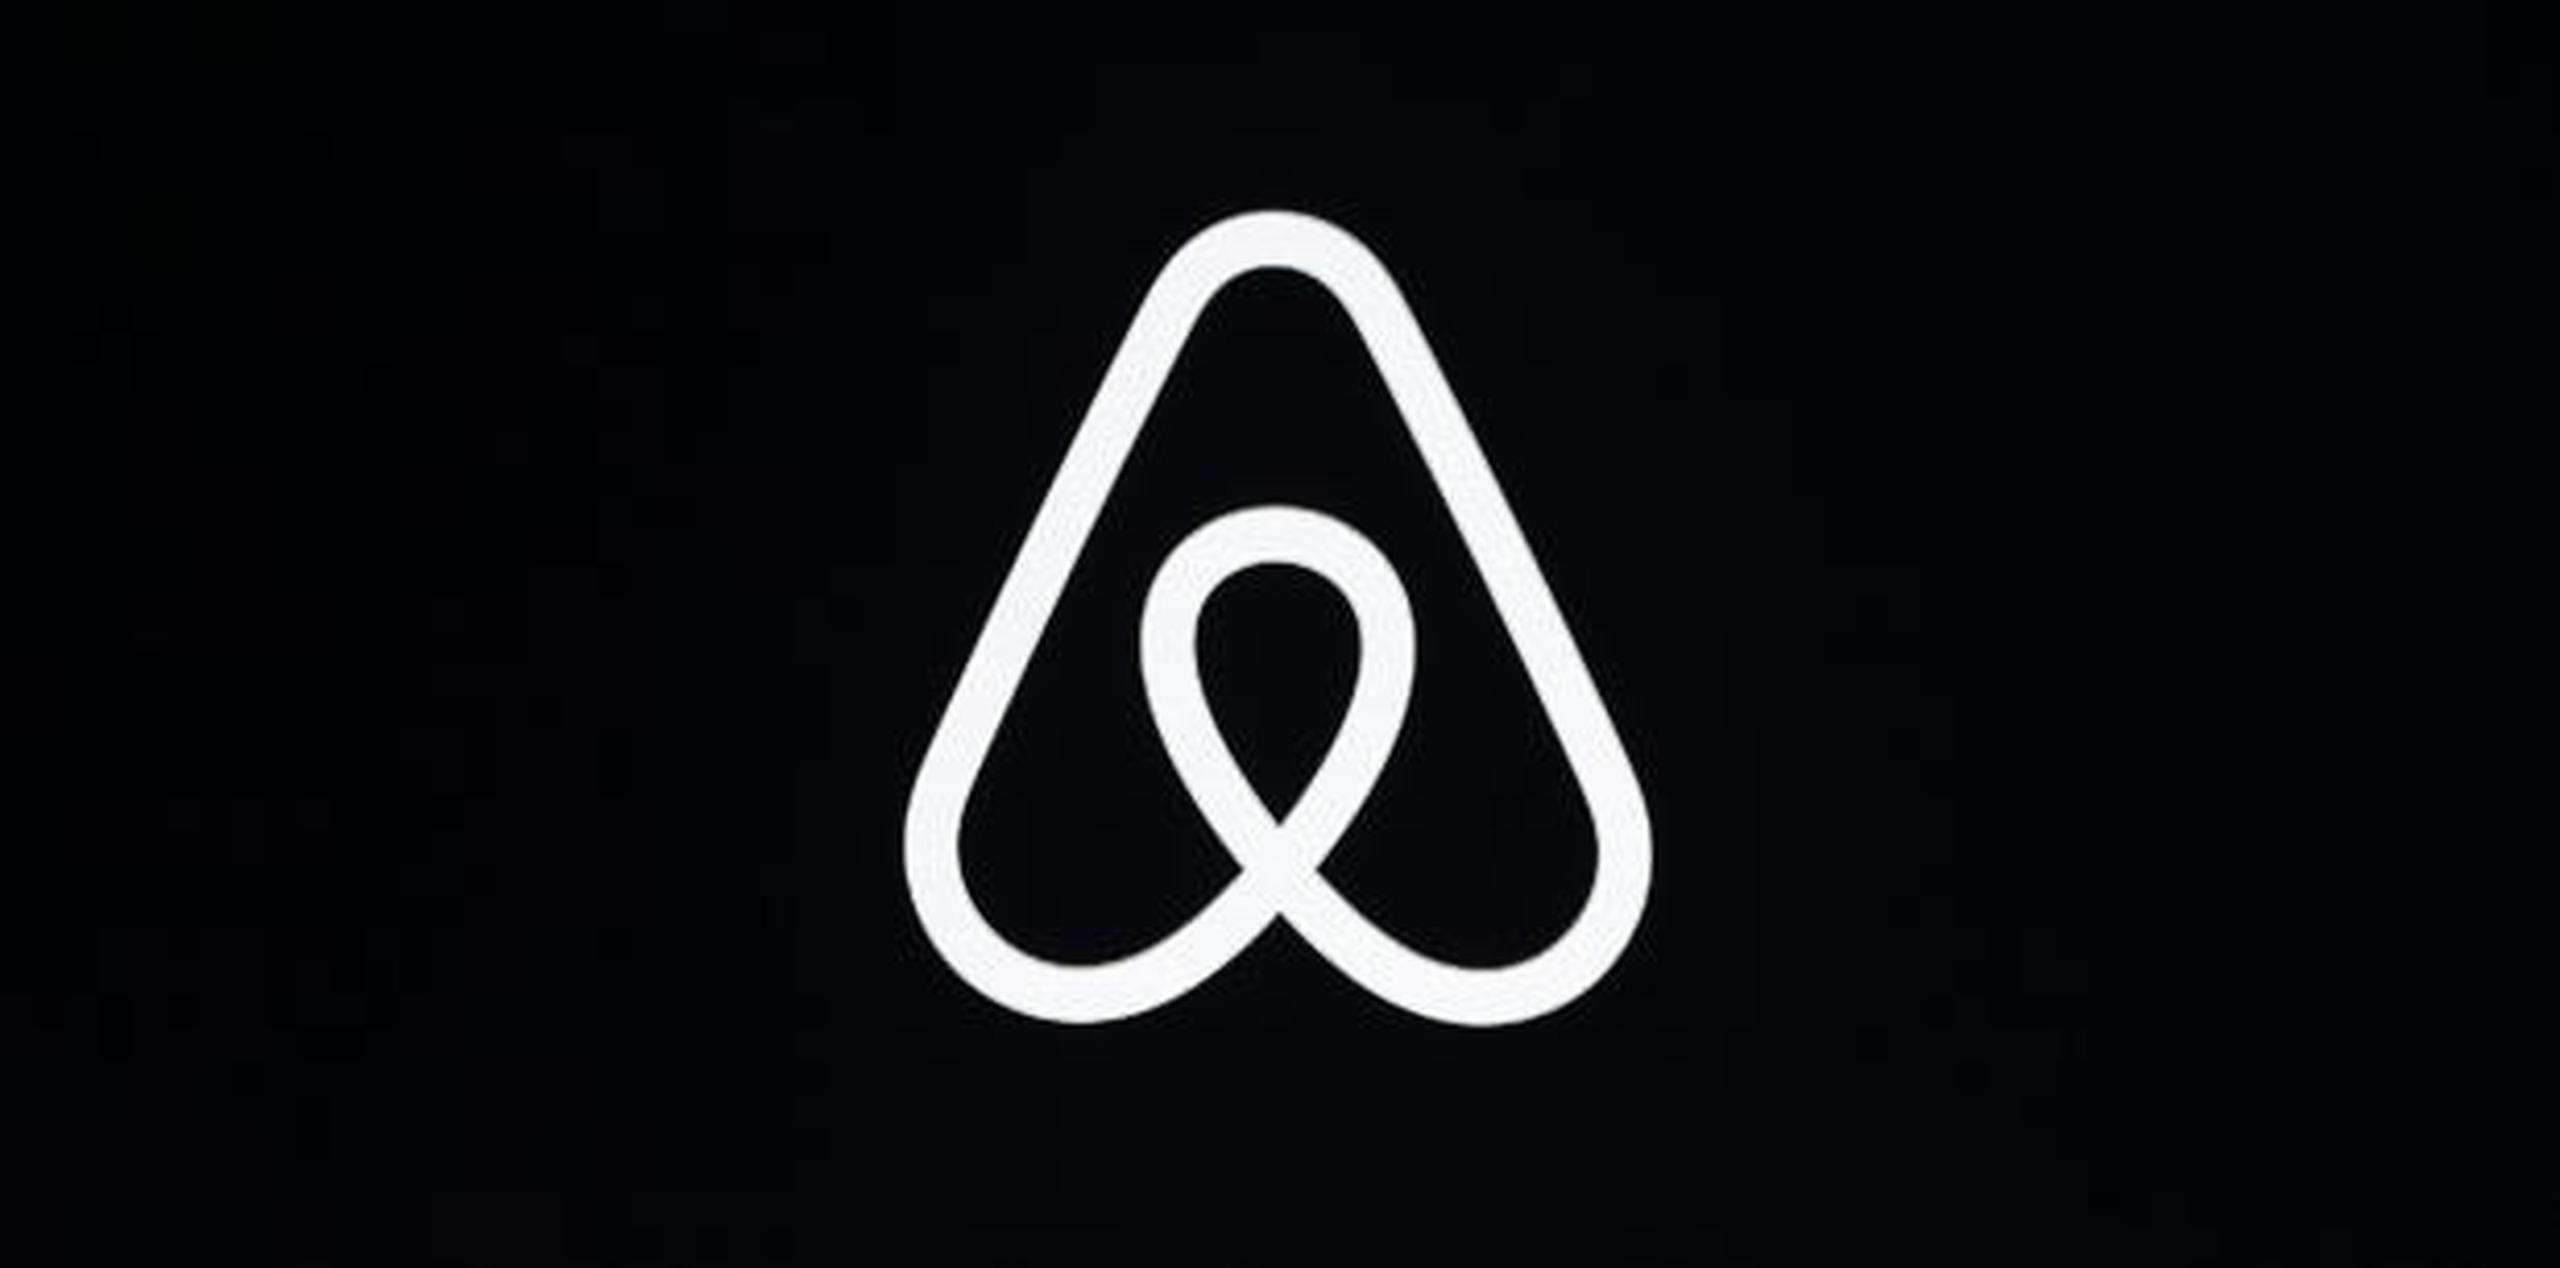 La iniciativa de la empresa promociona una nueva colección de reservaciones disponibles llamada Airbnb Adventures. (AP / Eric Risberg)